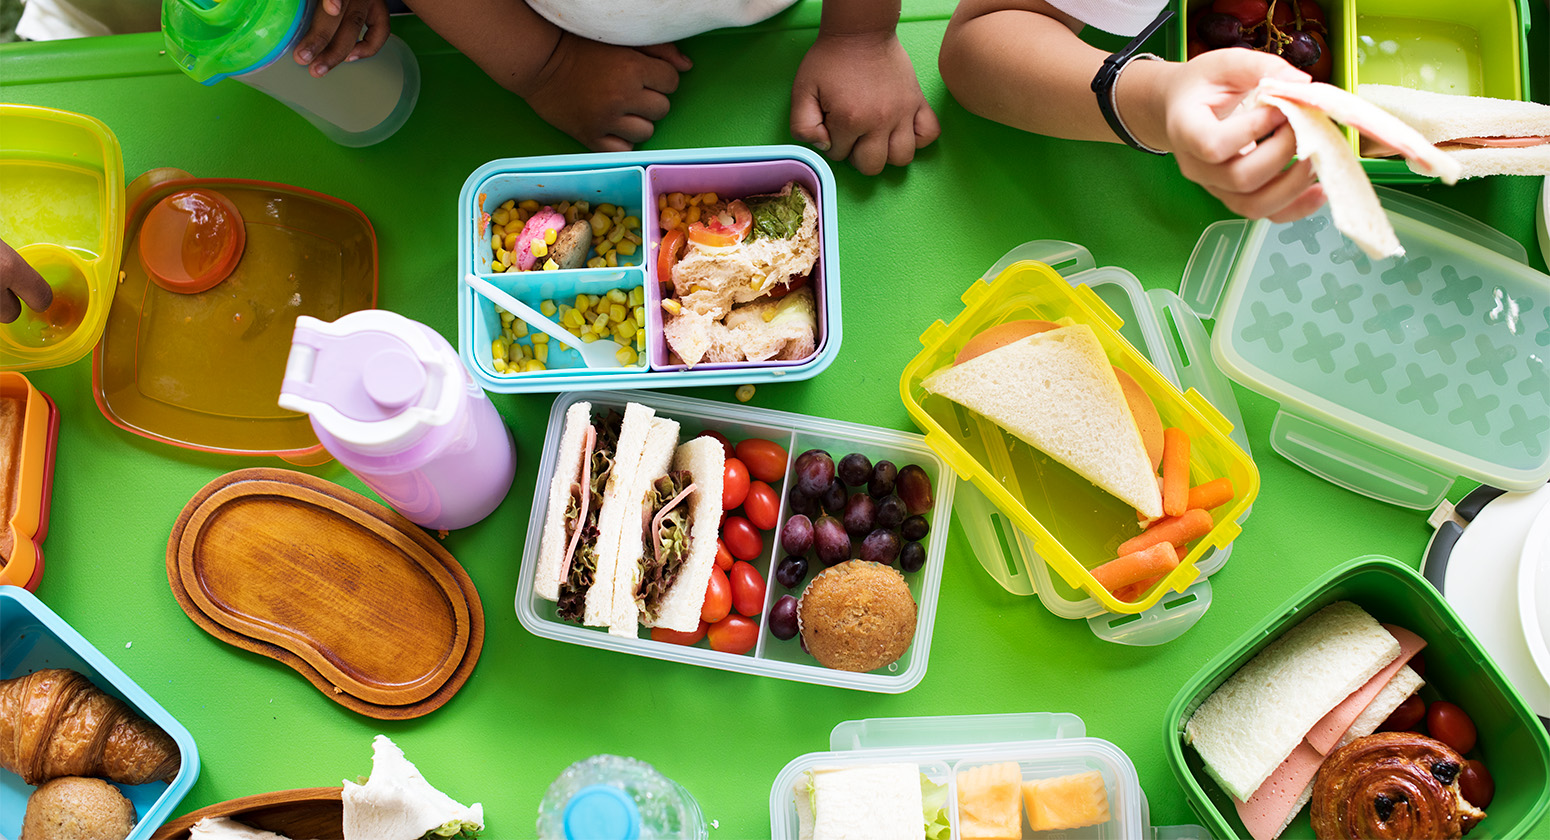 It's Cool - Alimentação saudável na educação infantil